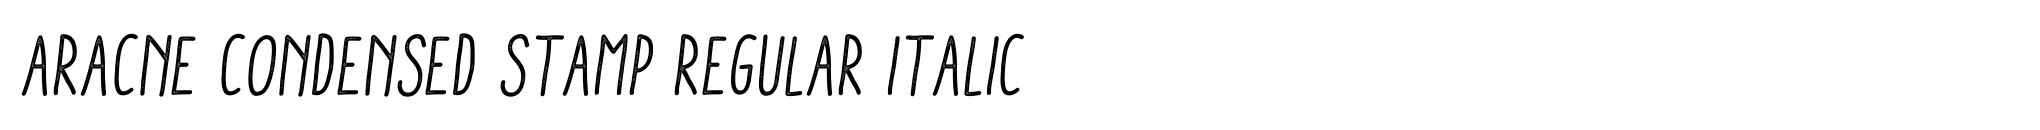 Aracne Condensed Stamp Regular Italic image